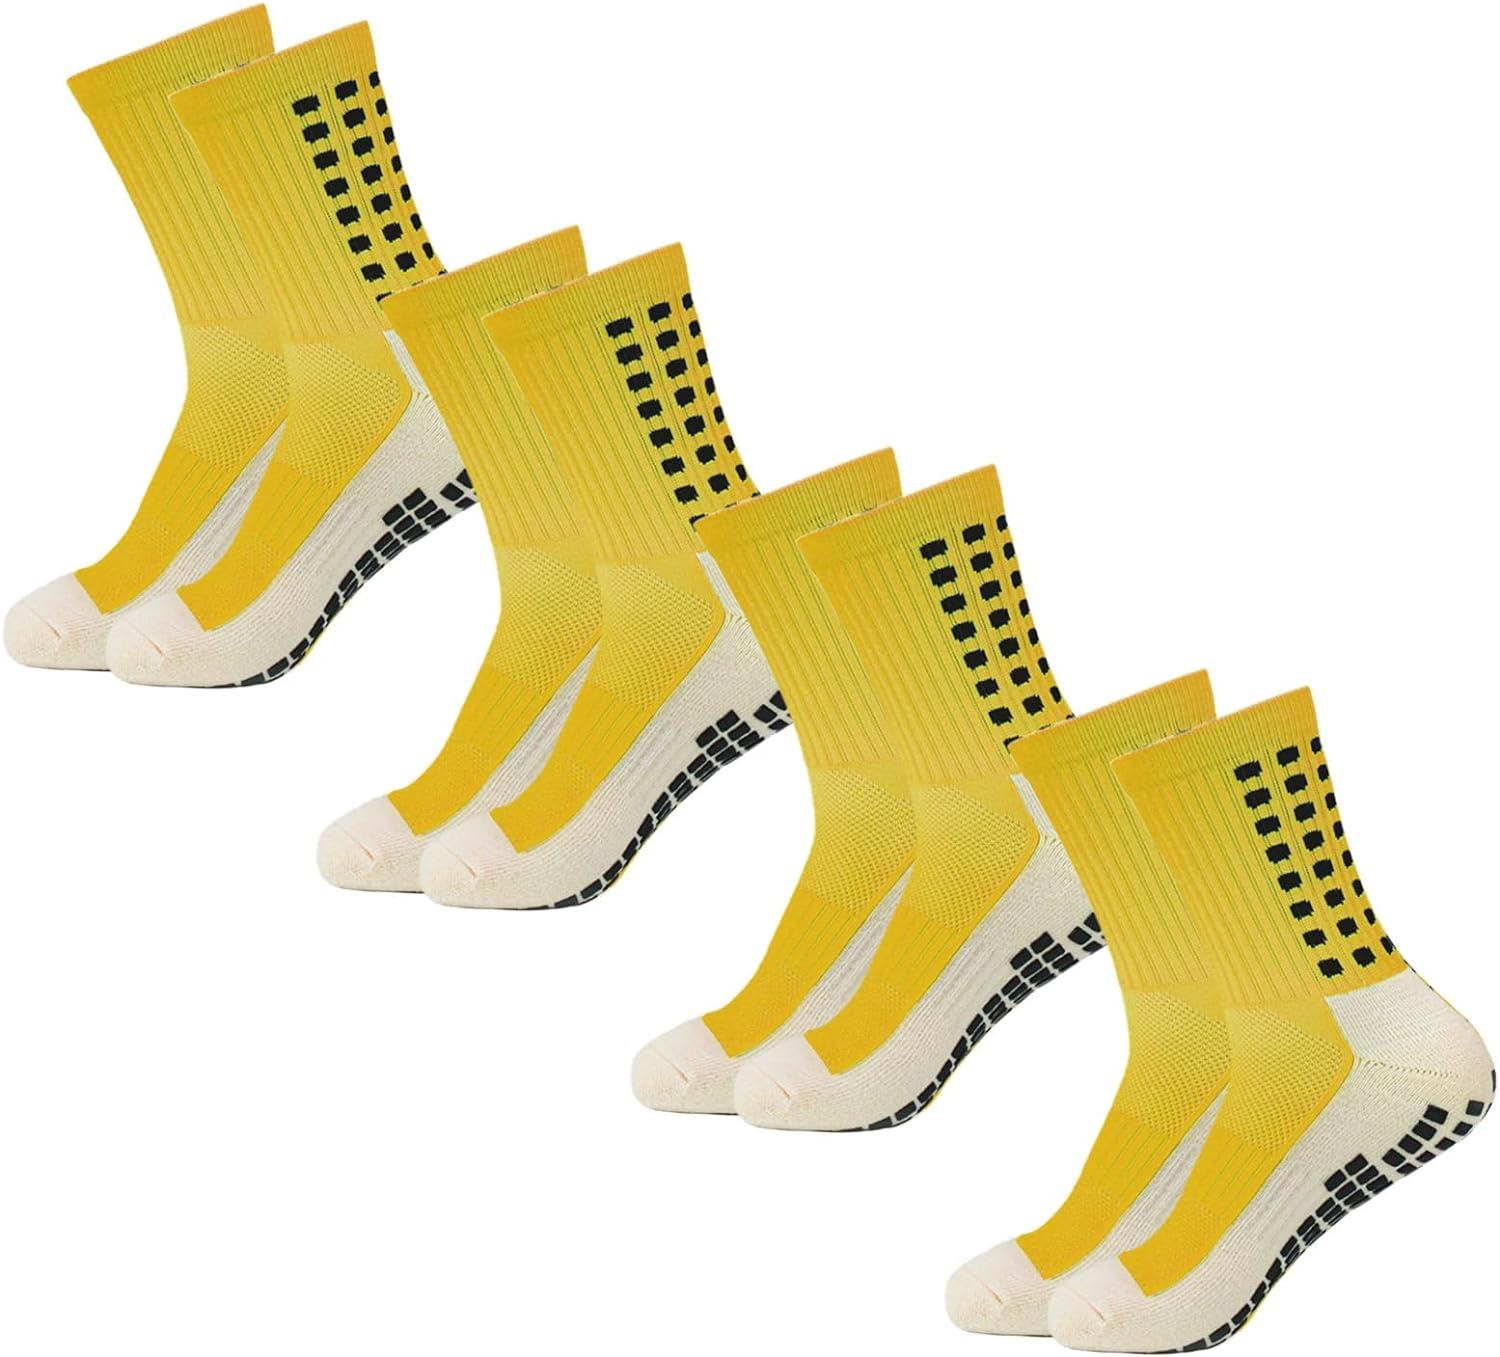 Men's Soccer Socks Anti Slip Non Slip Grip Pads for Football Basketball Sports Grip Socks, 4 Pair